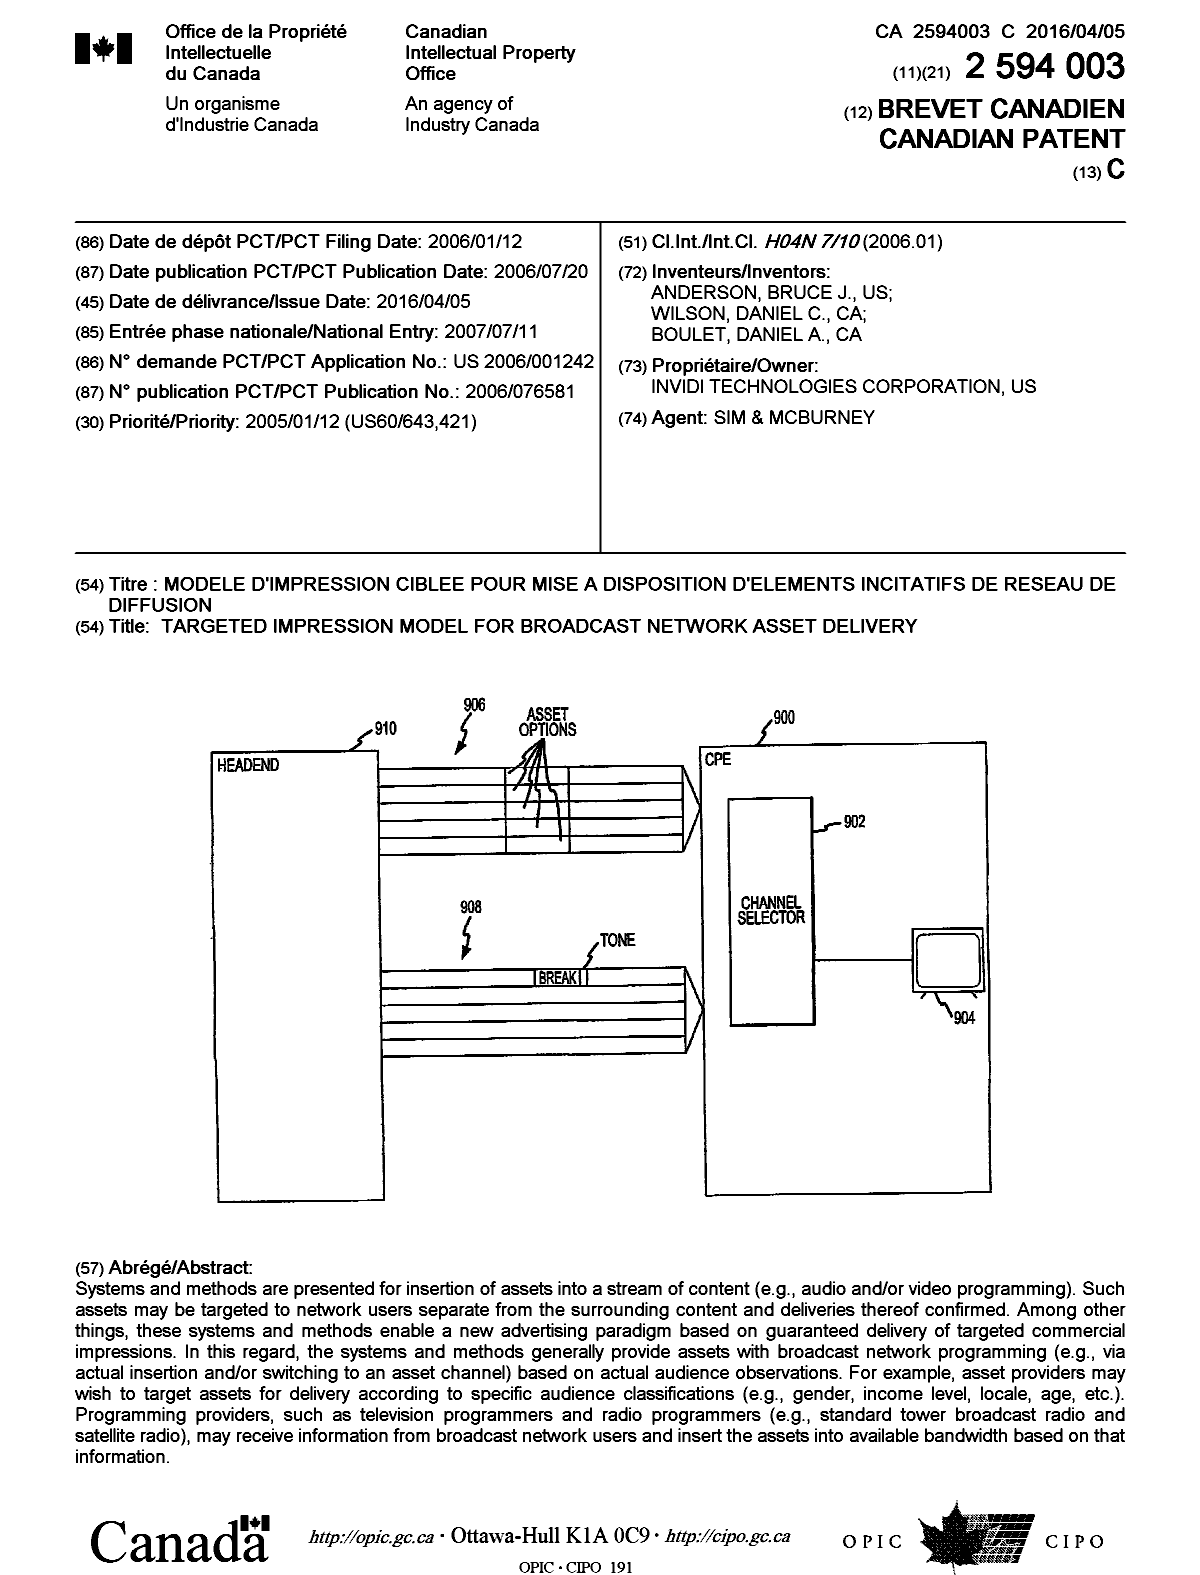 Document de brevet canadien 2594003. Page couverture 20160217. Image 1 de 1